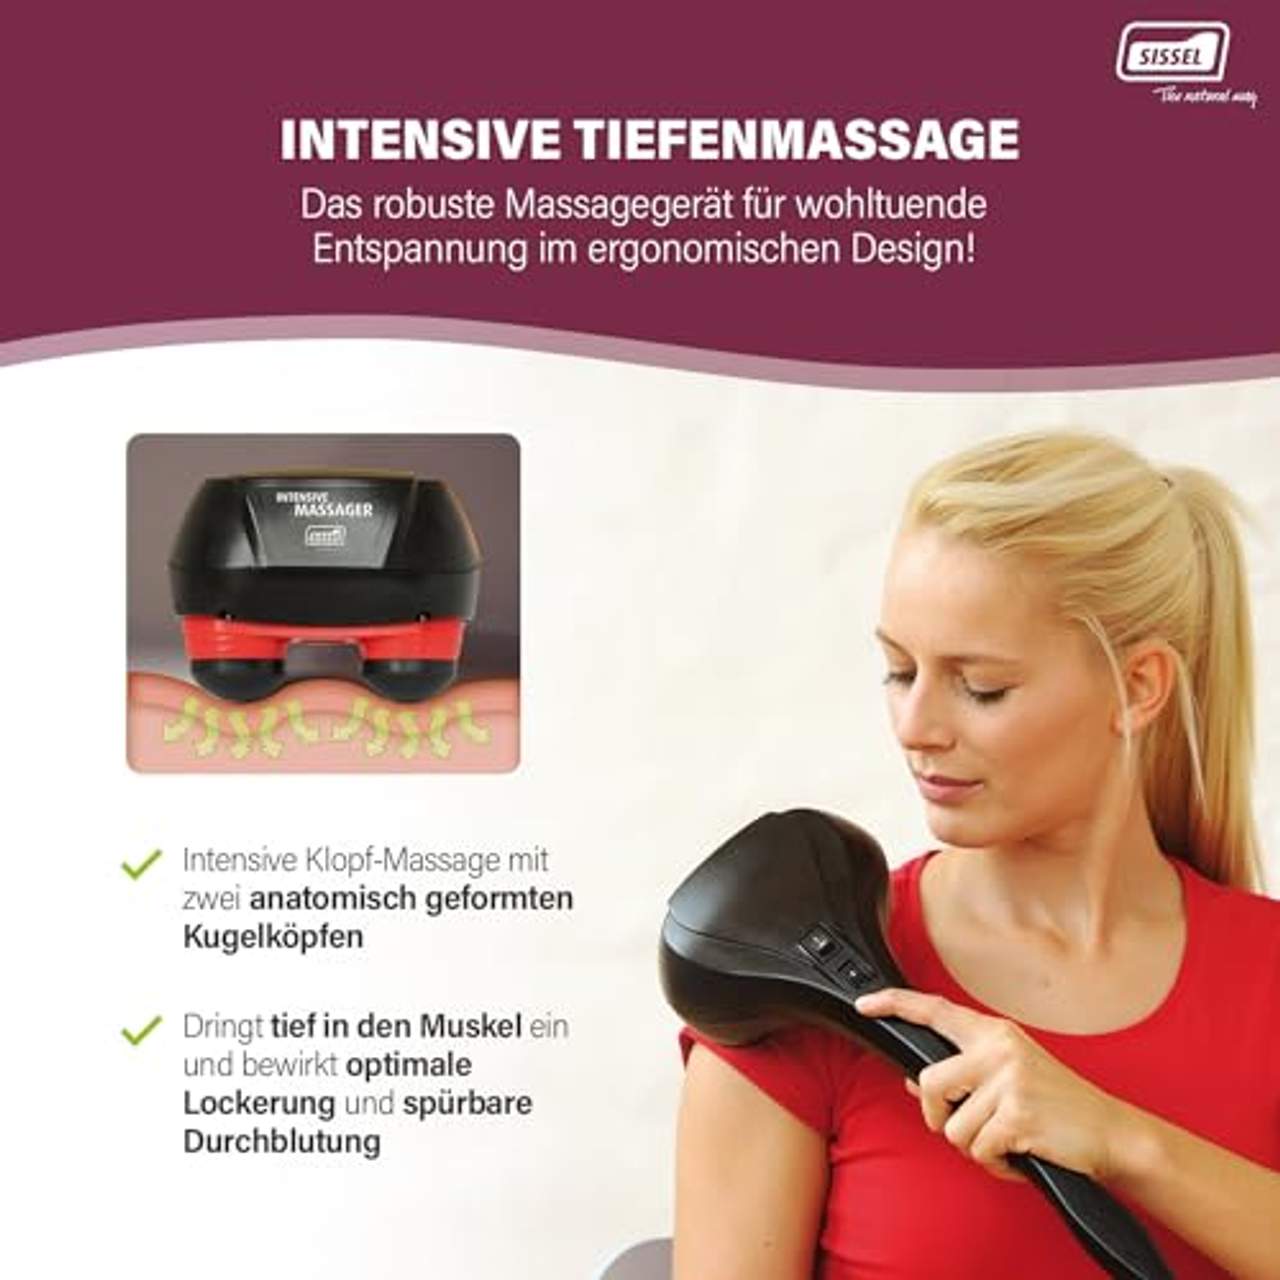 Sissel Intensive Massager